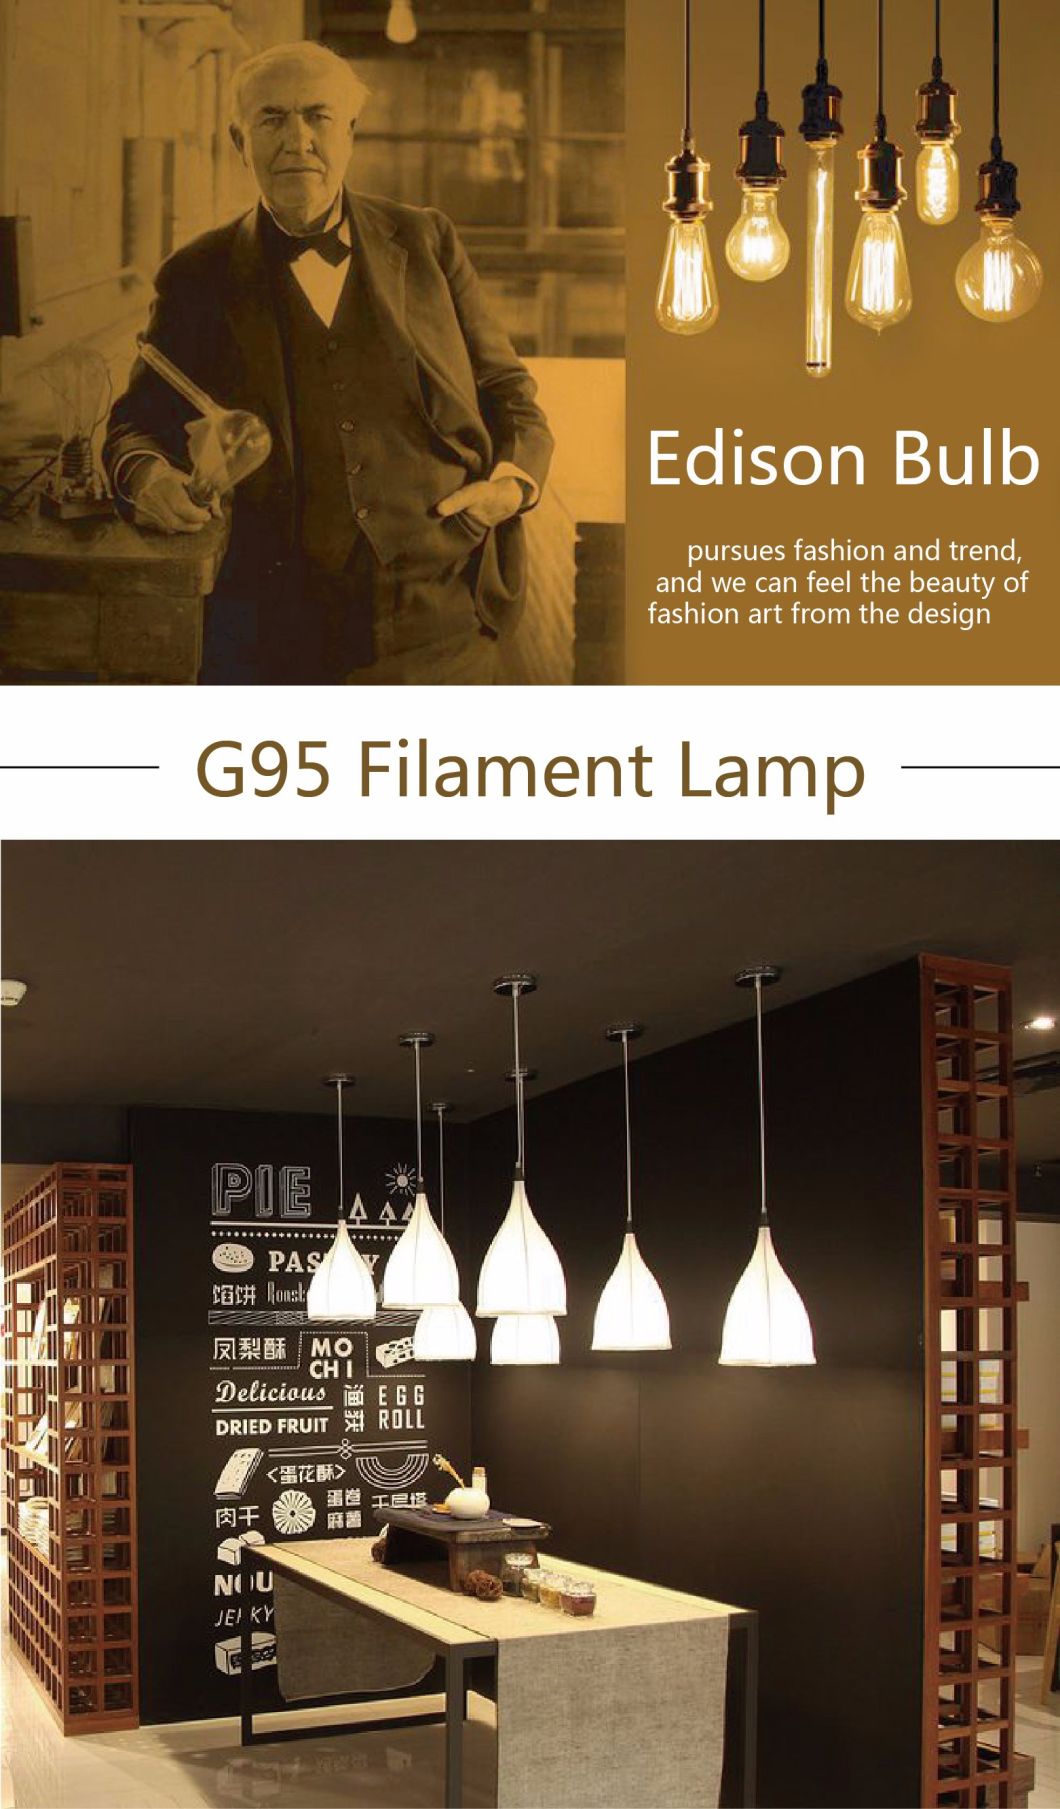 Warm White Vintage G95 2W-8W E27 Global LED Filament Bulb